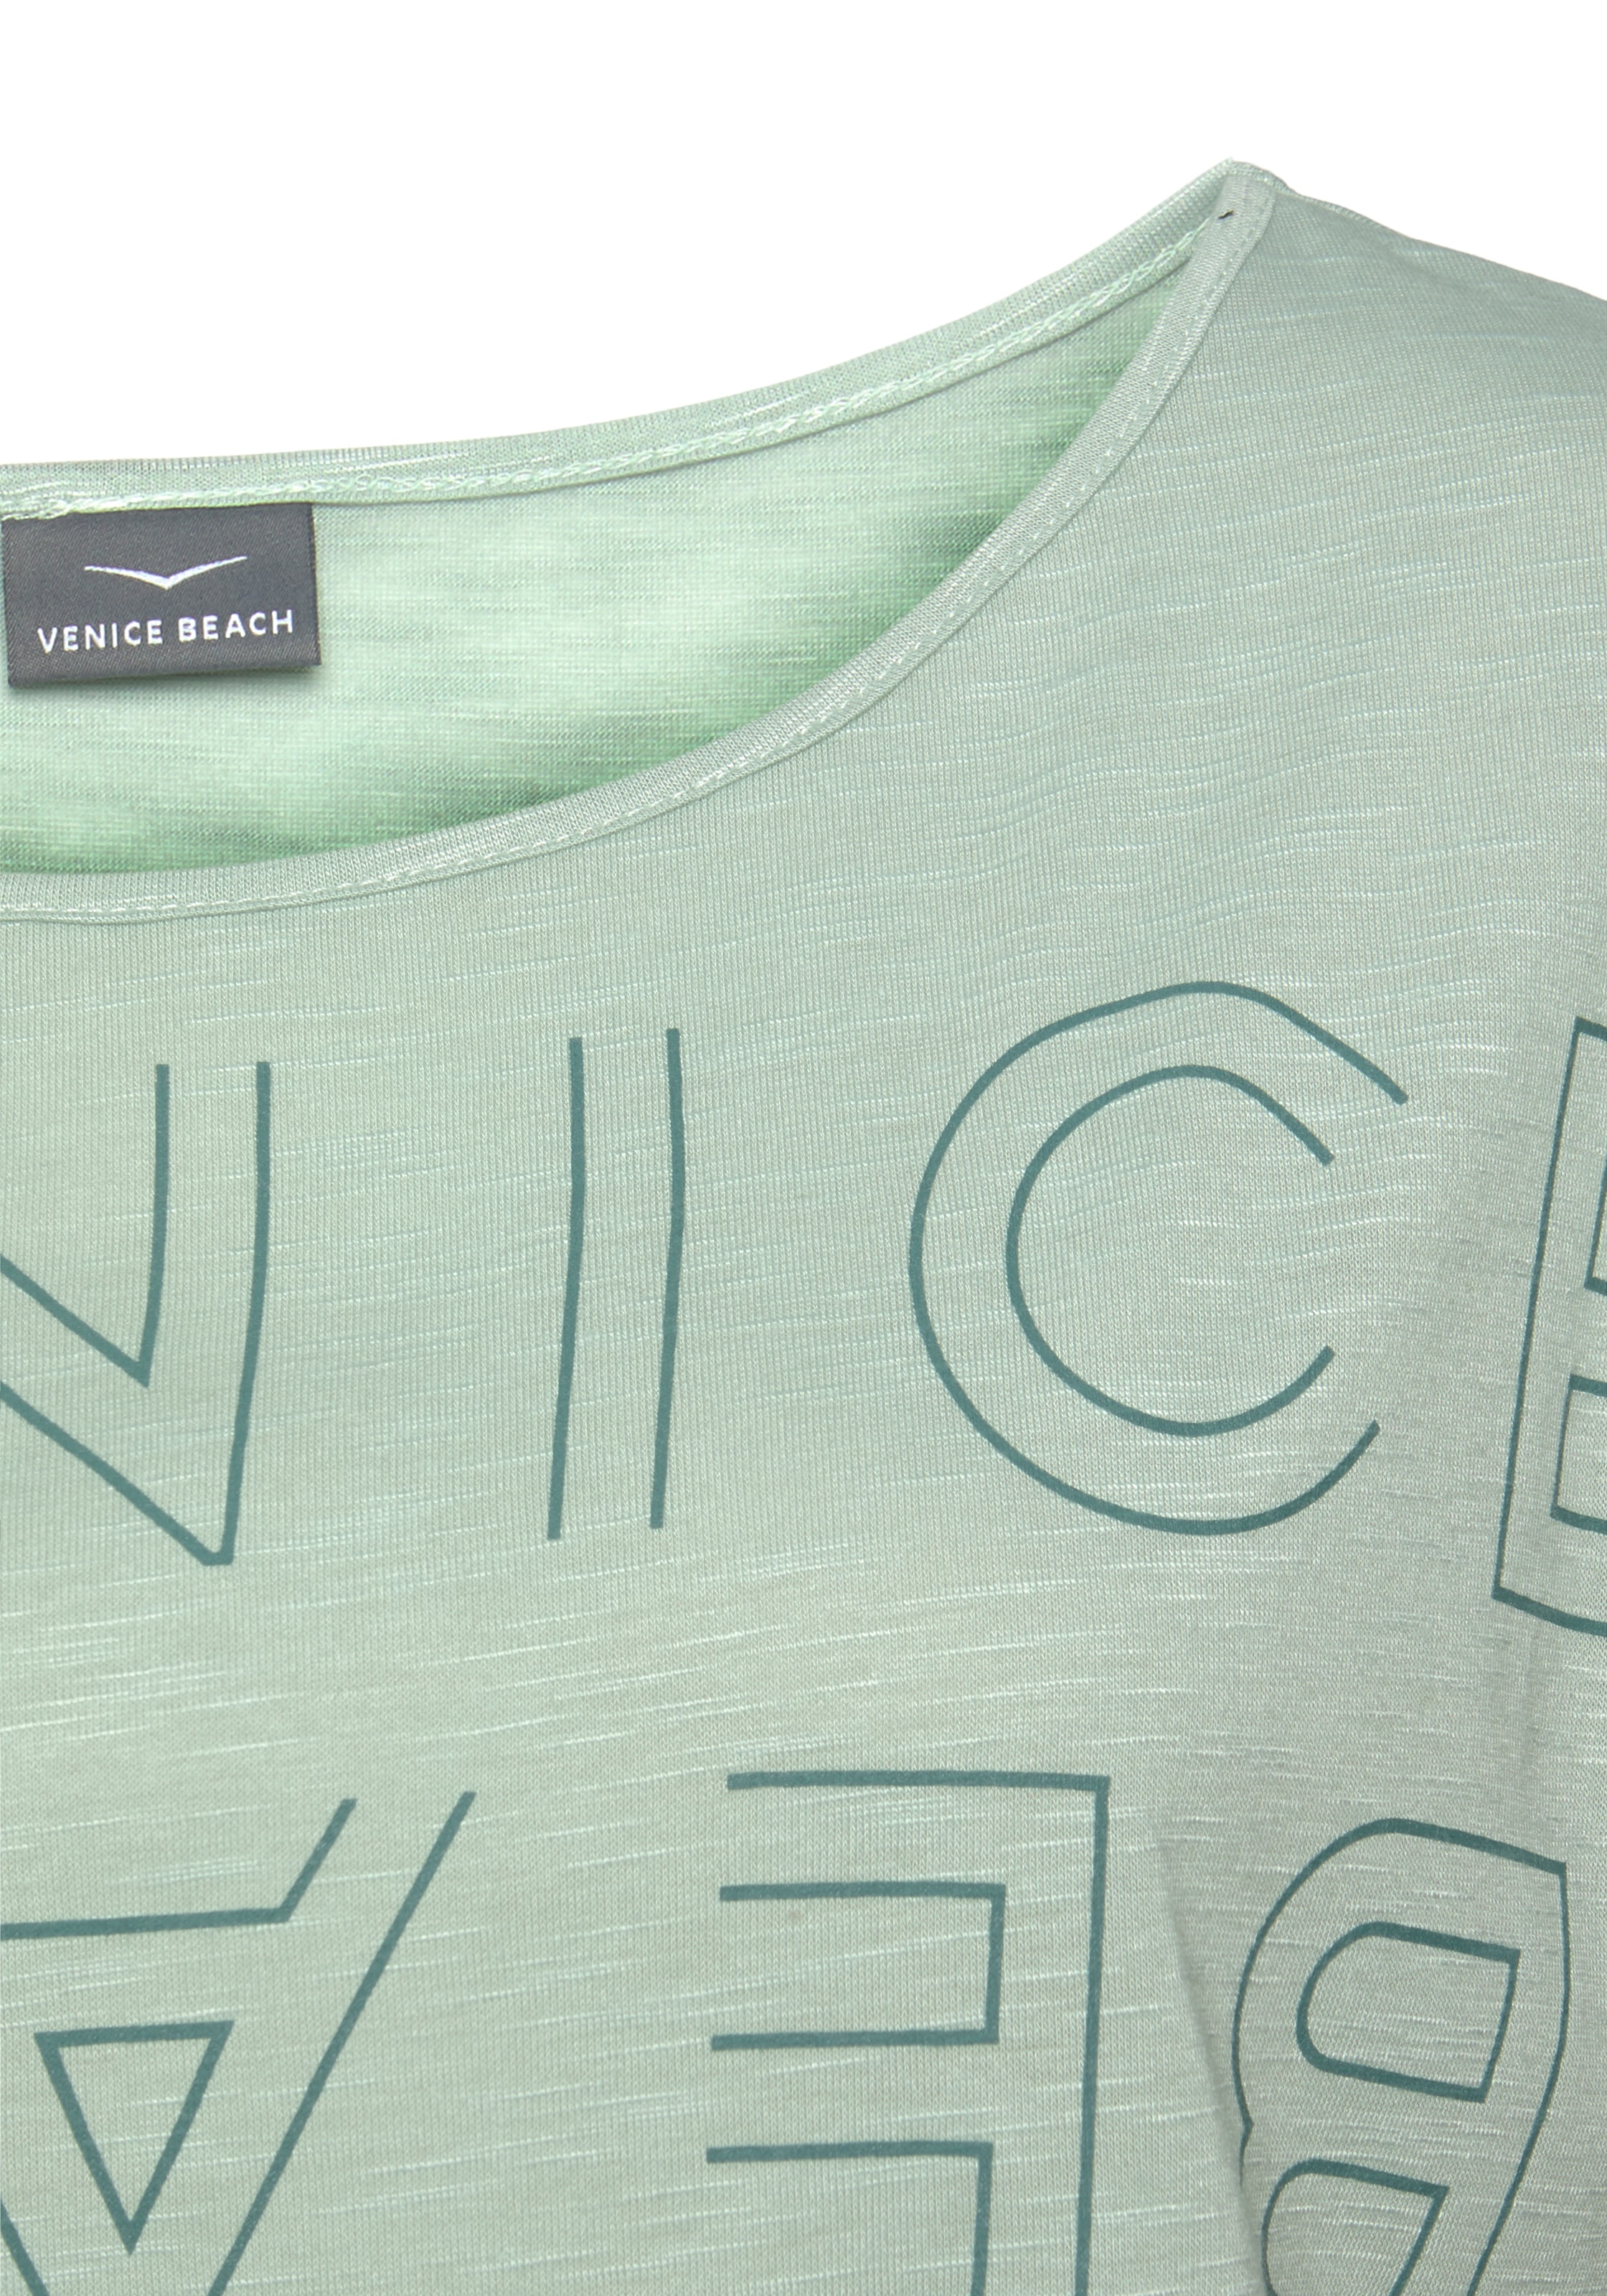 Venice Beach Rundhalsshirt, mit Logoprint, T-Shirt, sommerlich-sportlicher Look